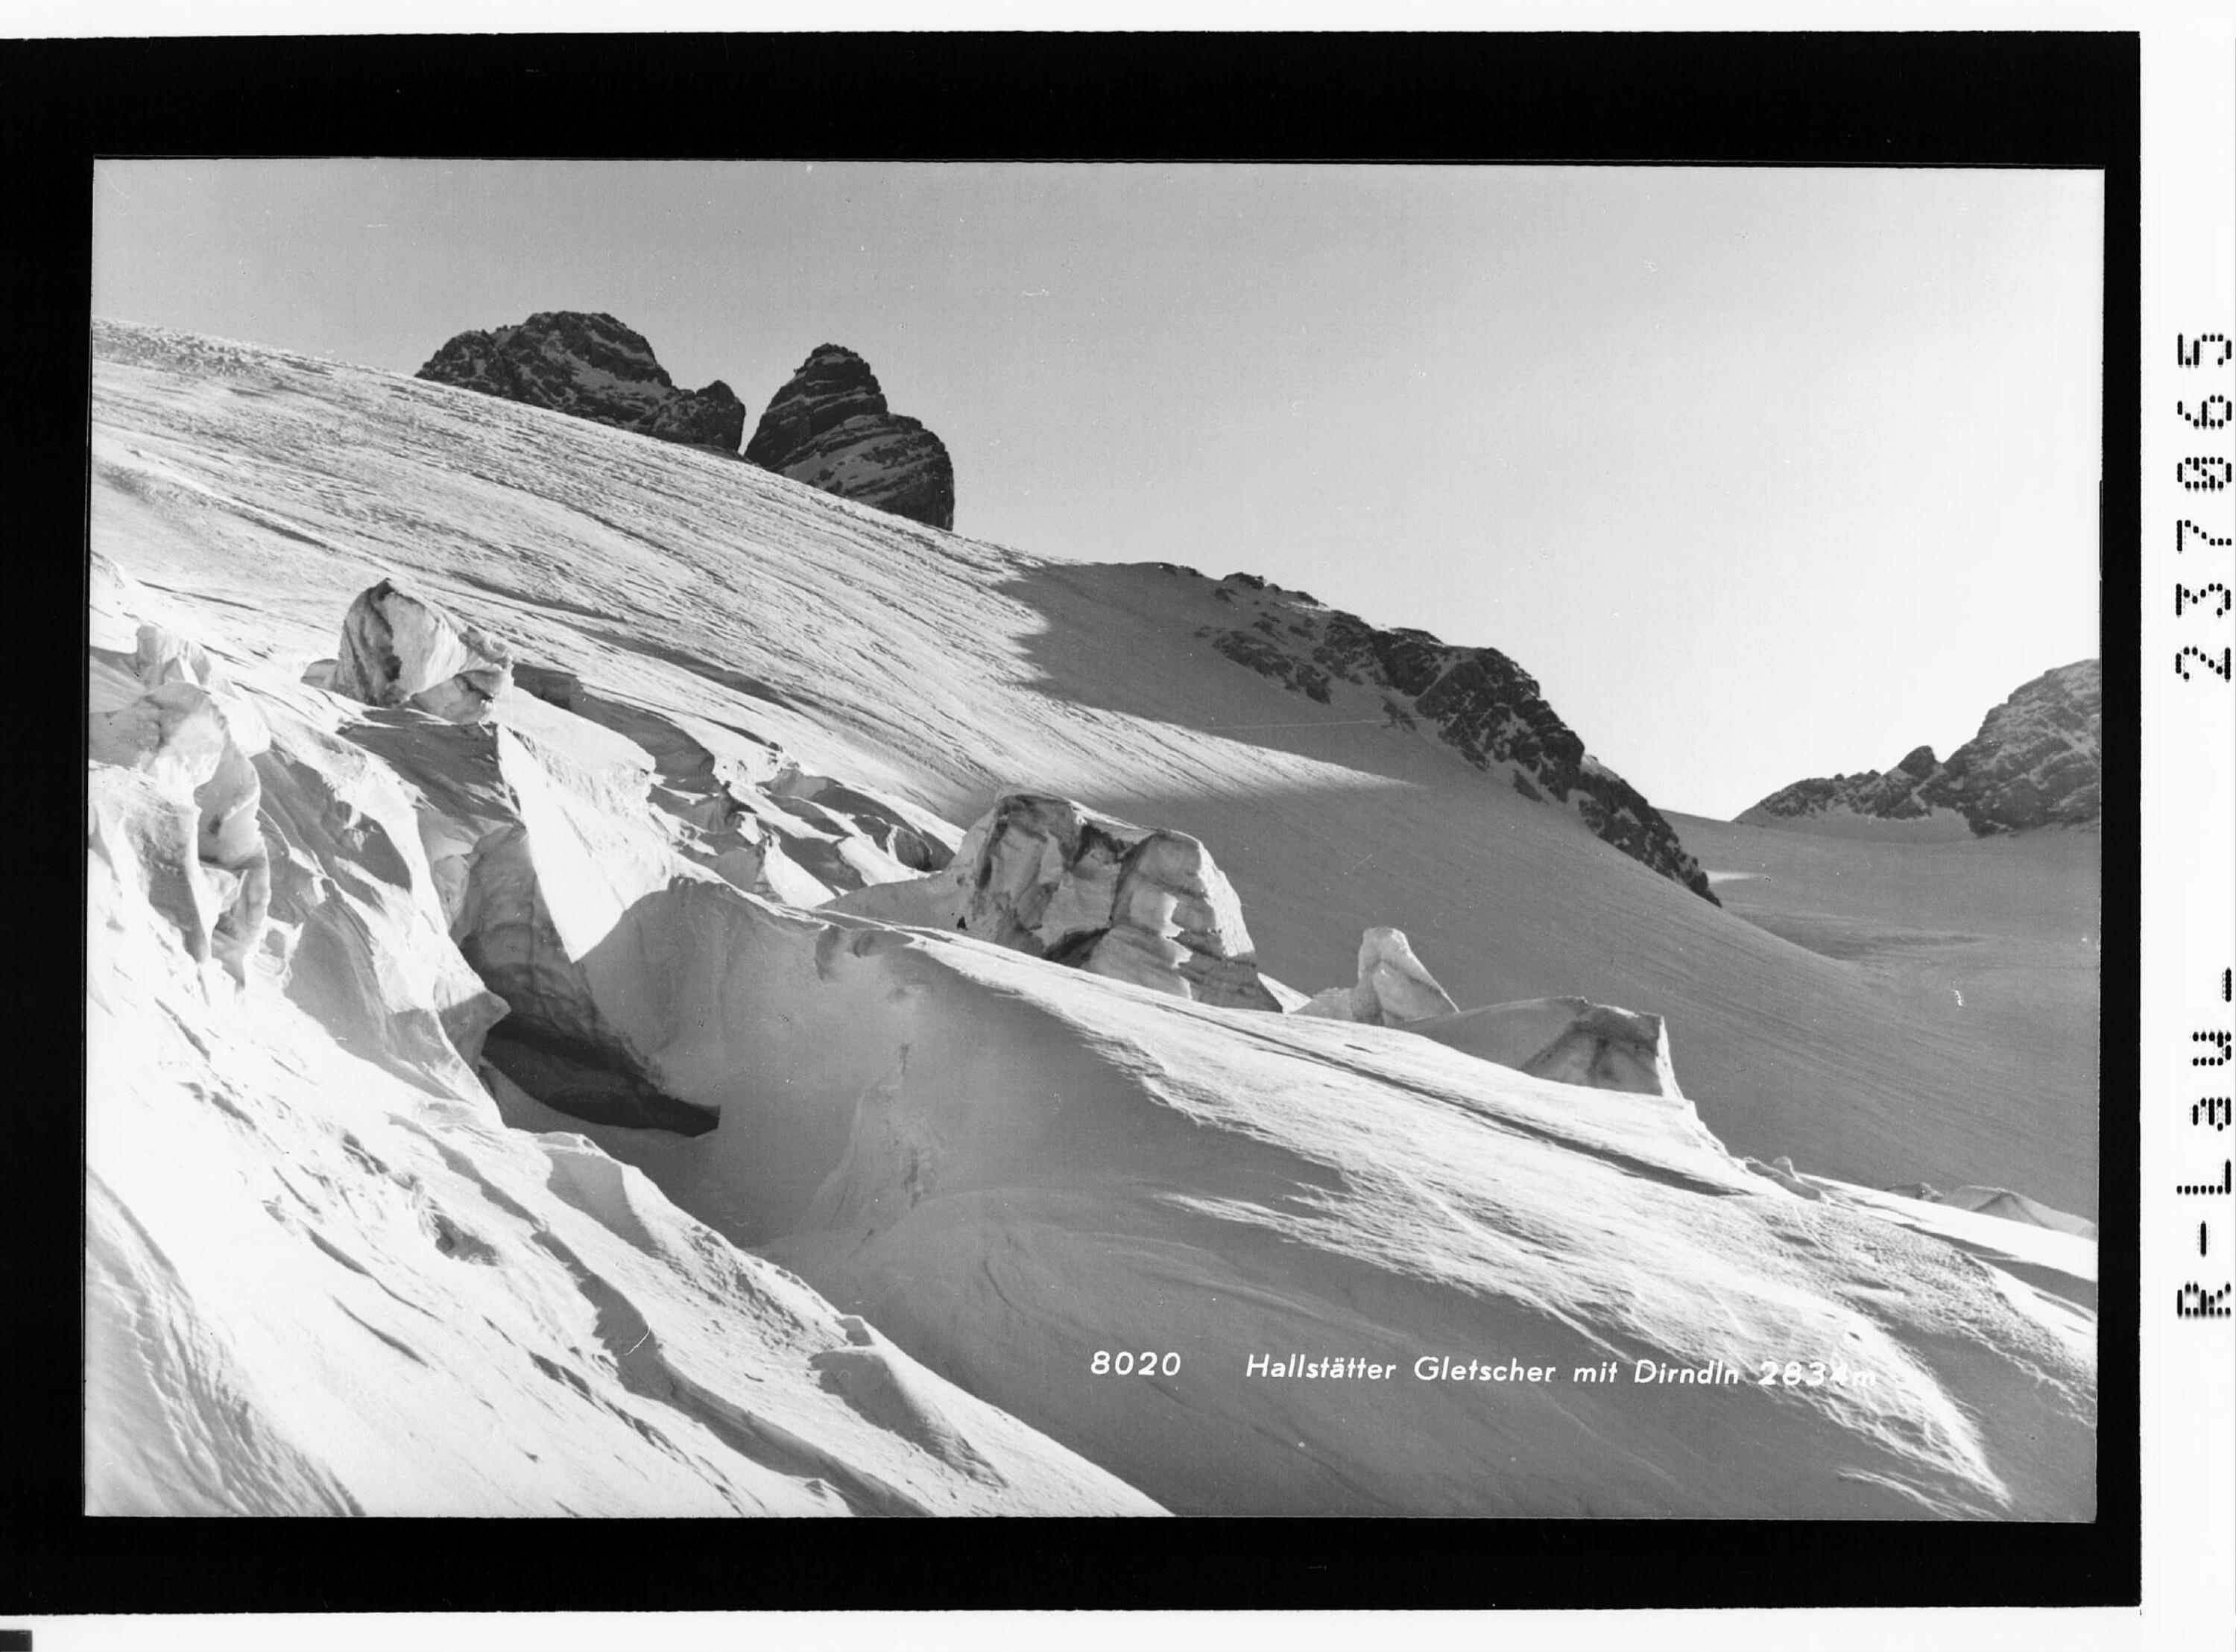 Hallstätter Gletscher mit Dirndln 2834 m></div>


    <hr>
    <div class=